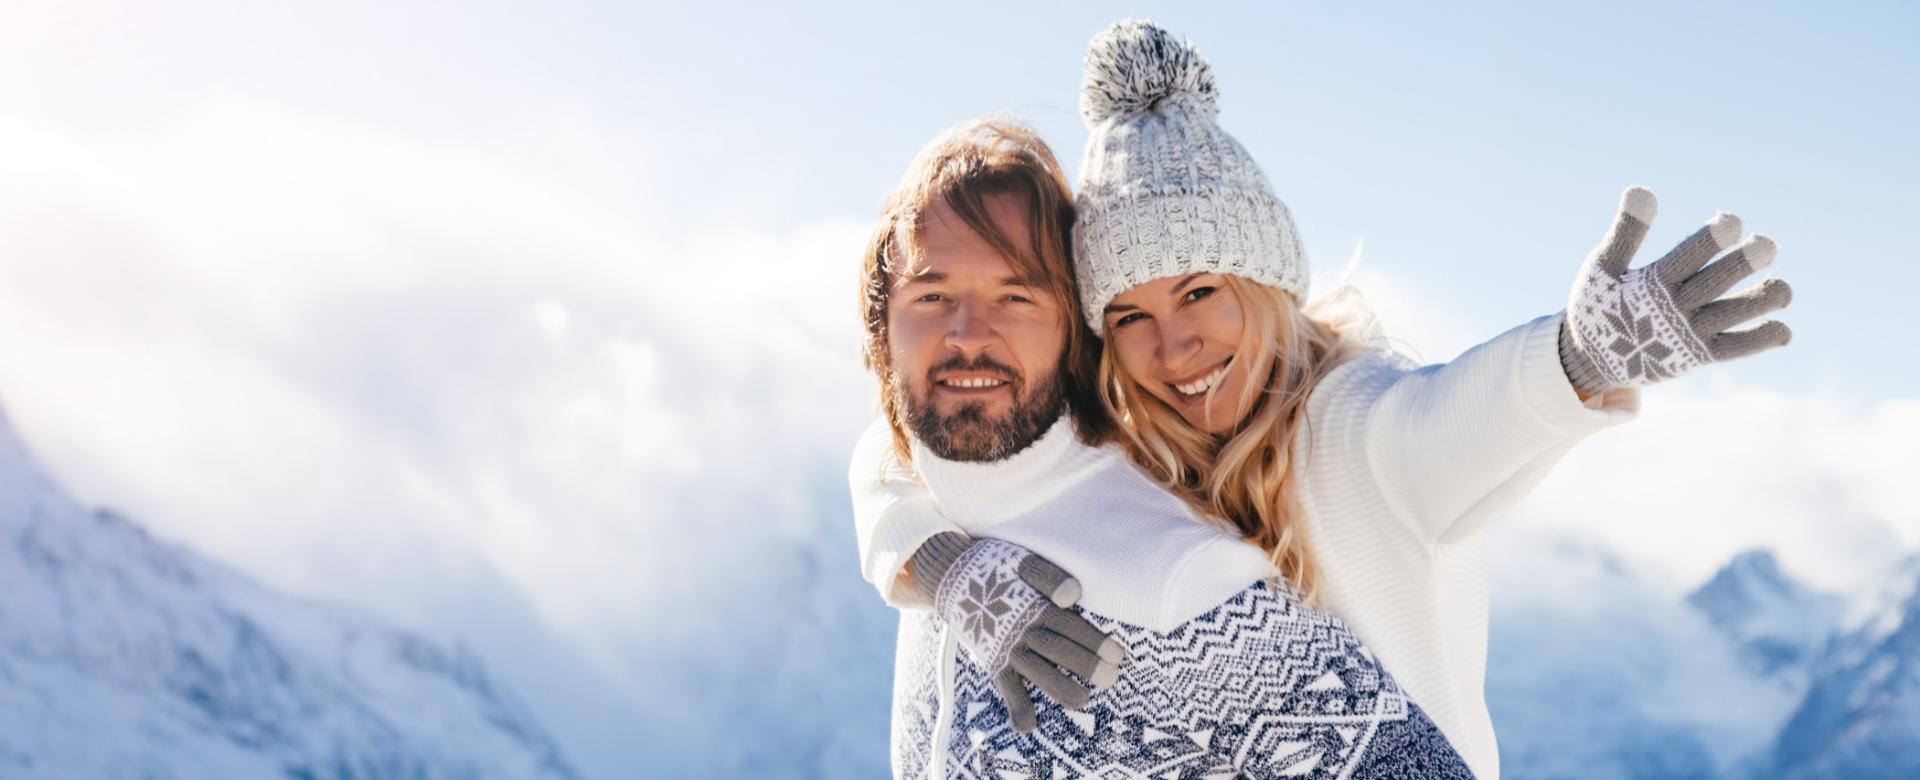 Coppia felice in montagna con abbigliamento invernale, cielo azzurro e neve.